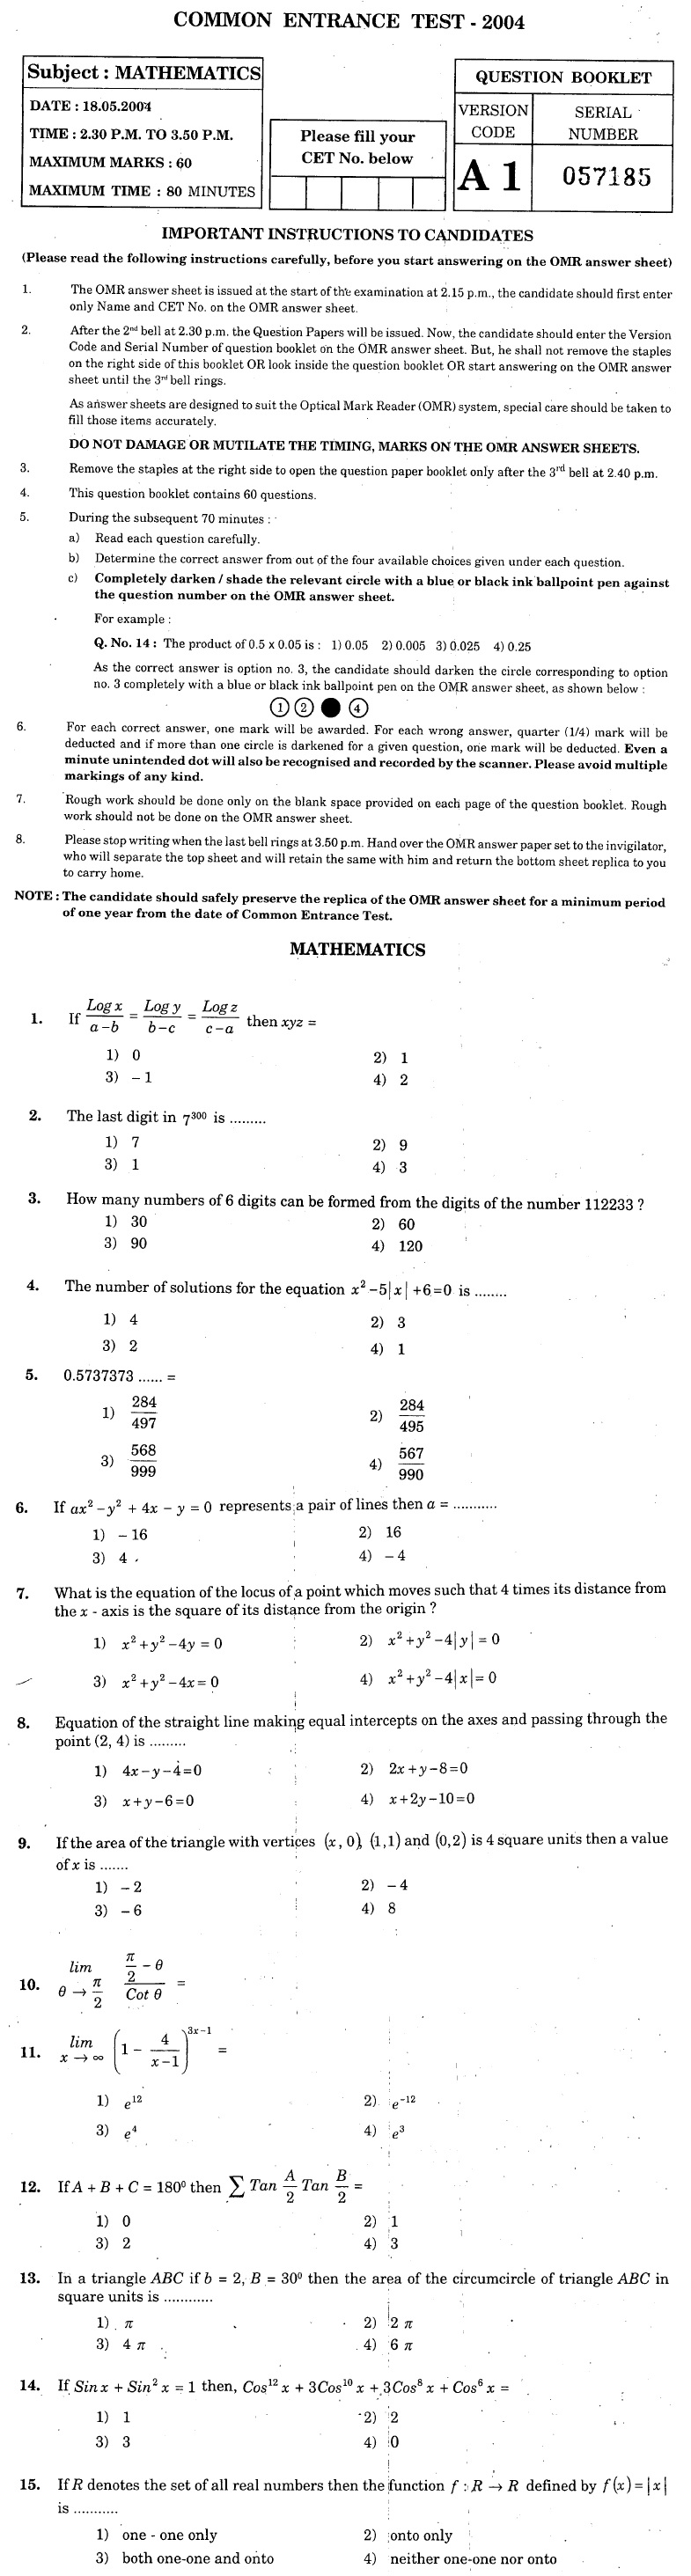 KCET 2004 Question Paper - Maths